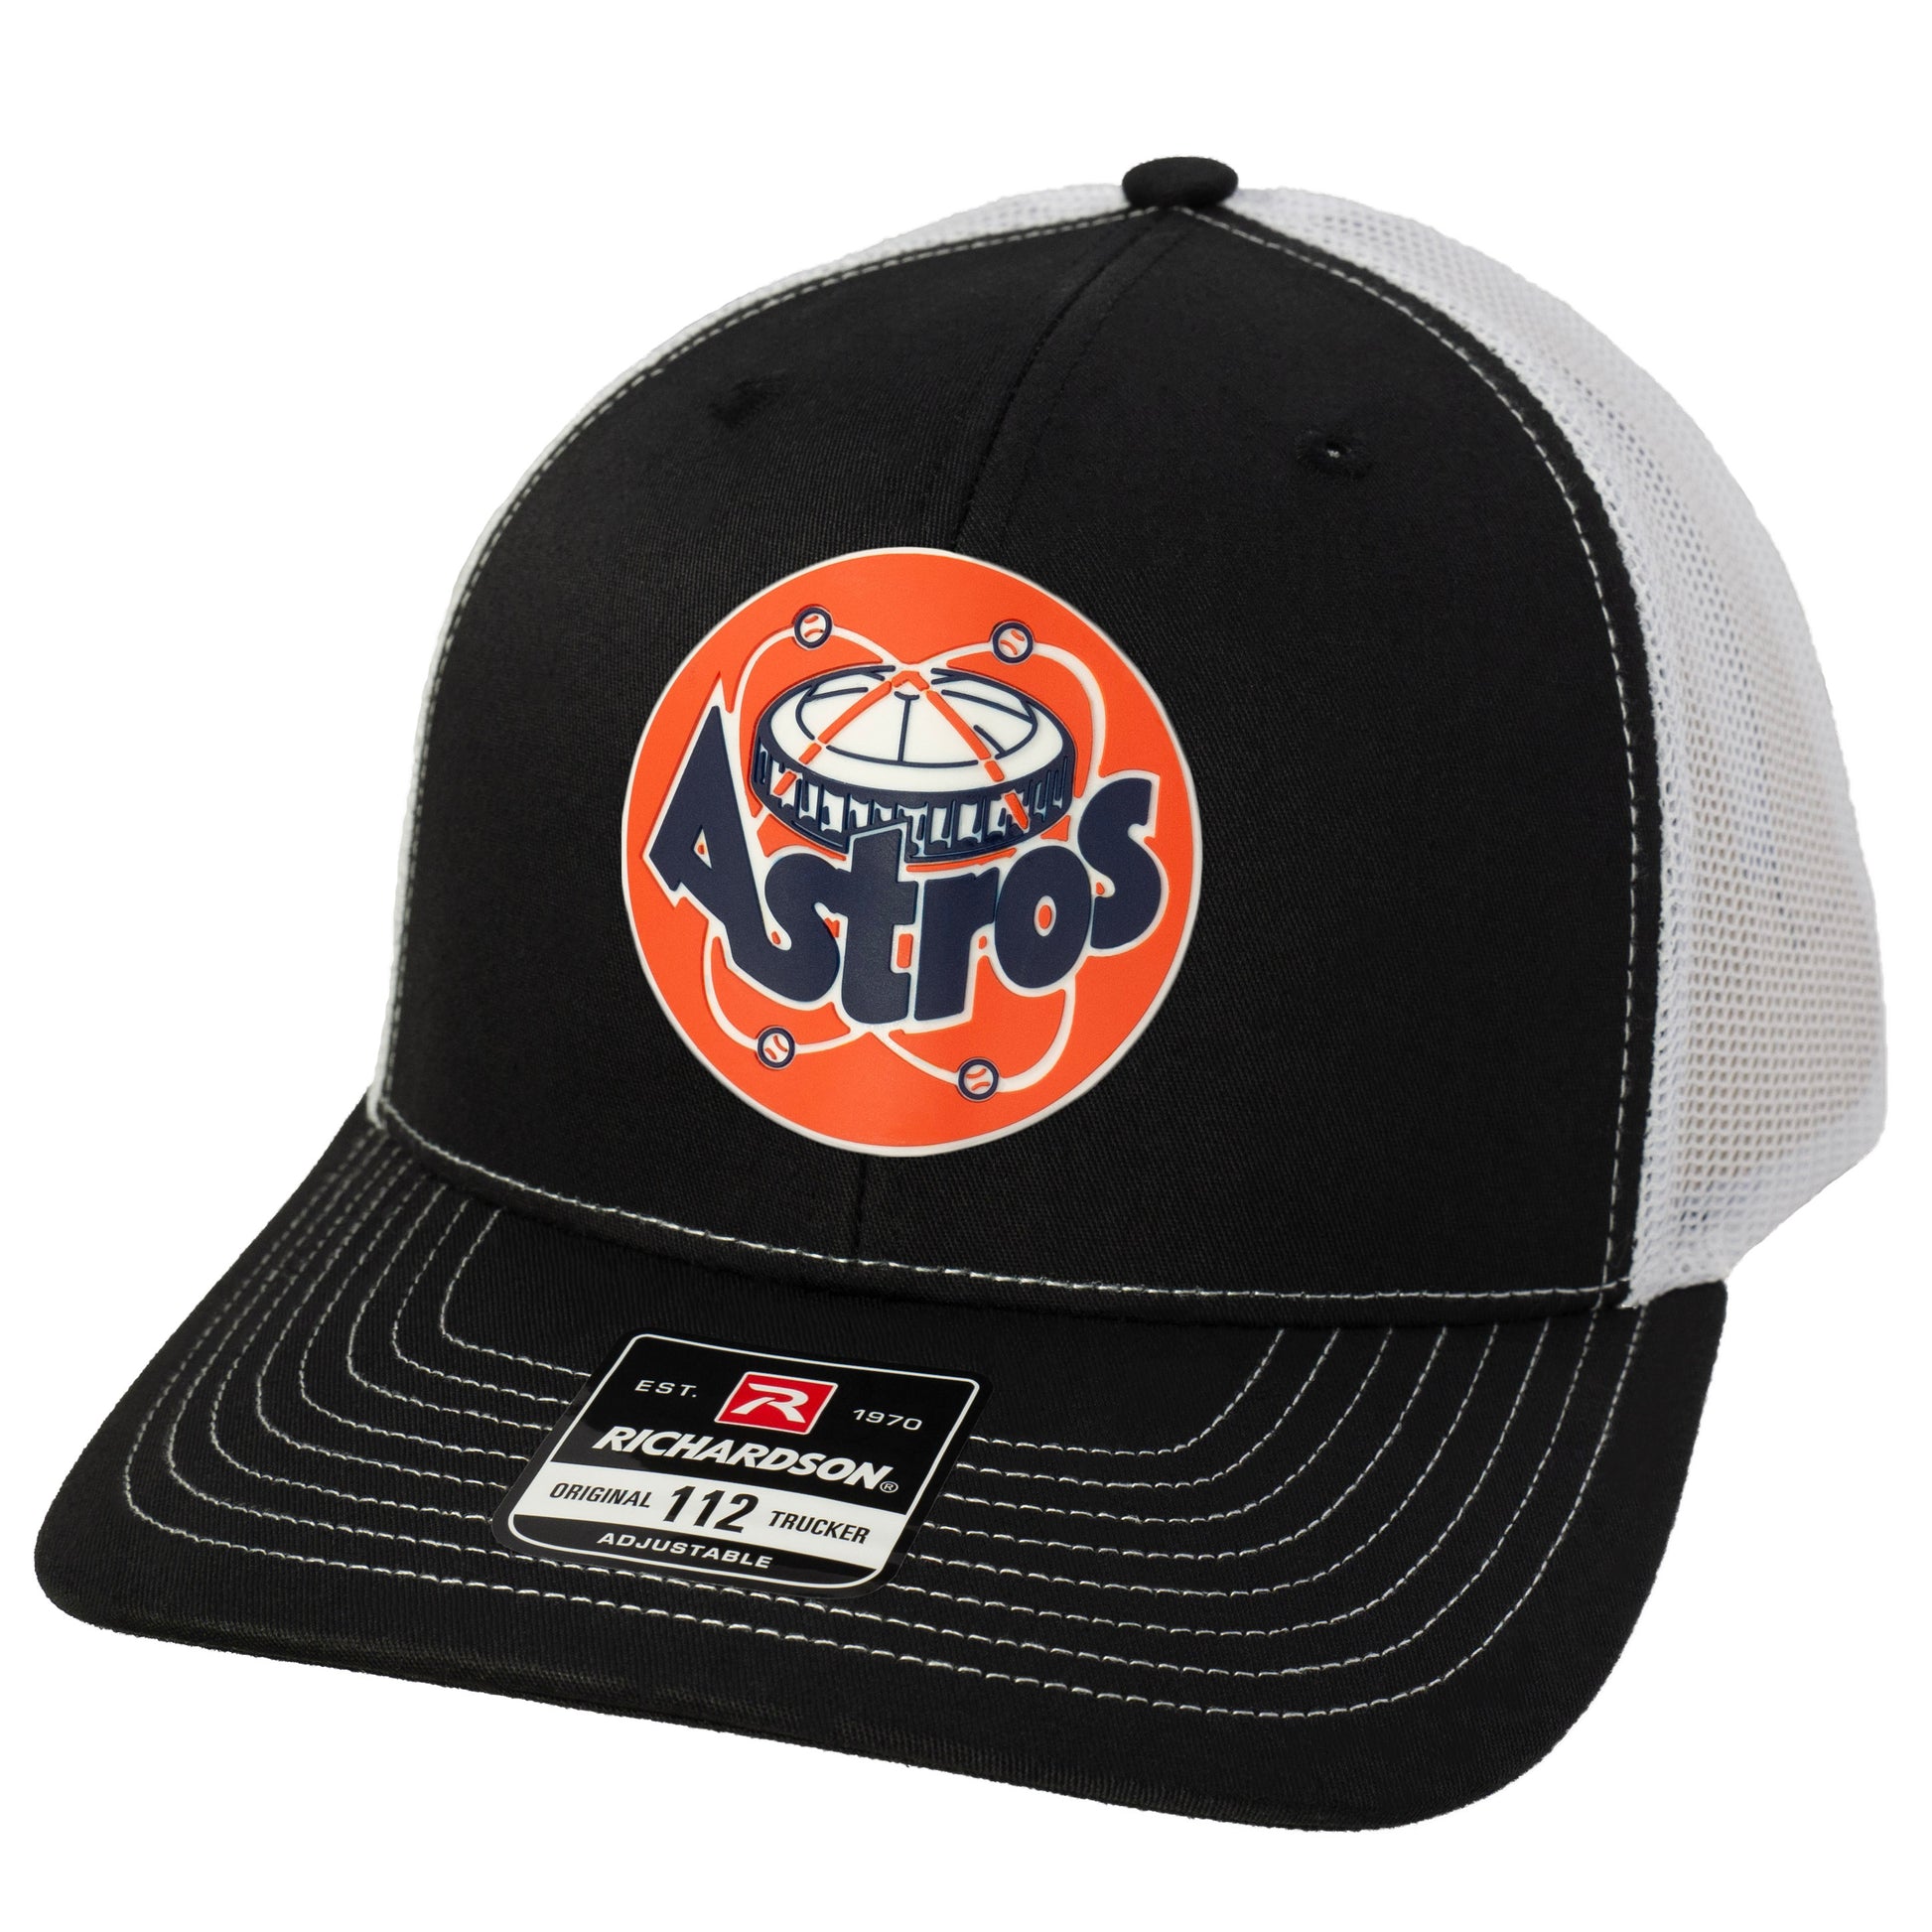 Astros Retro Astrodome 3D Snapback Trucker Hat- Black/ White - Ten Gallon Hat Co.